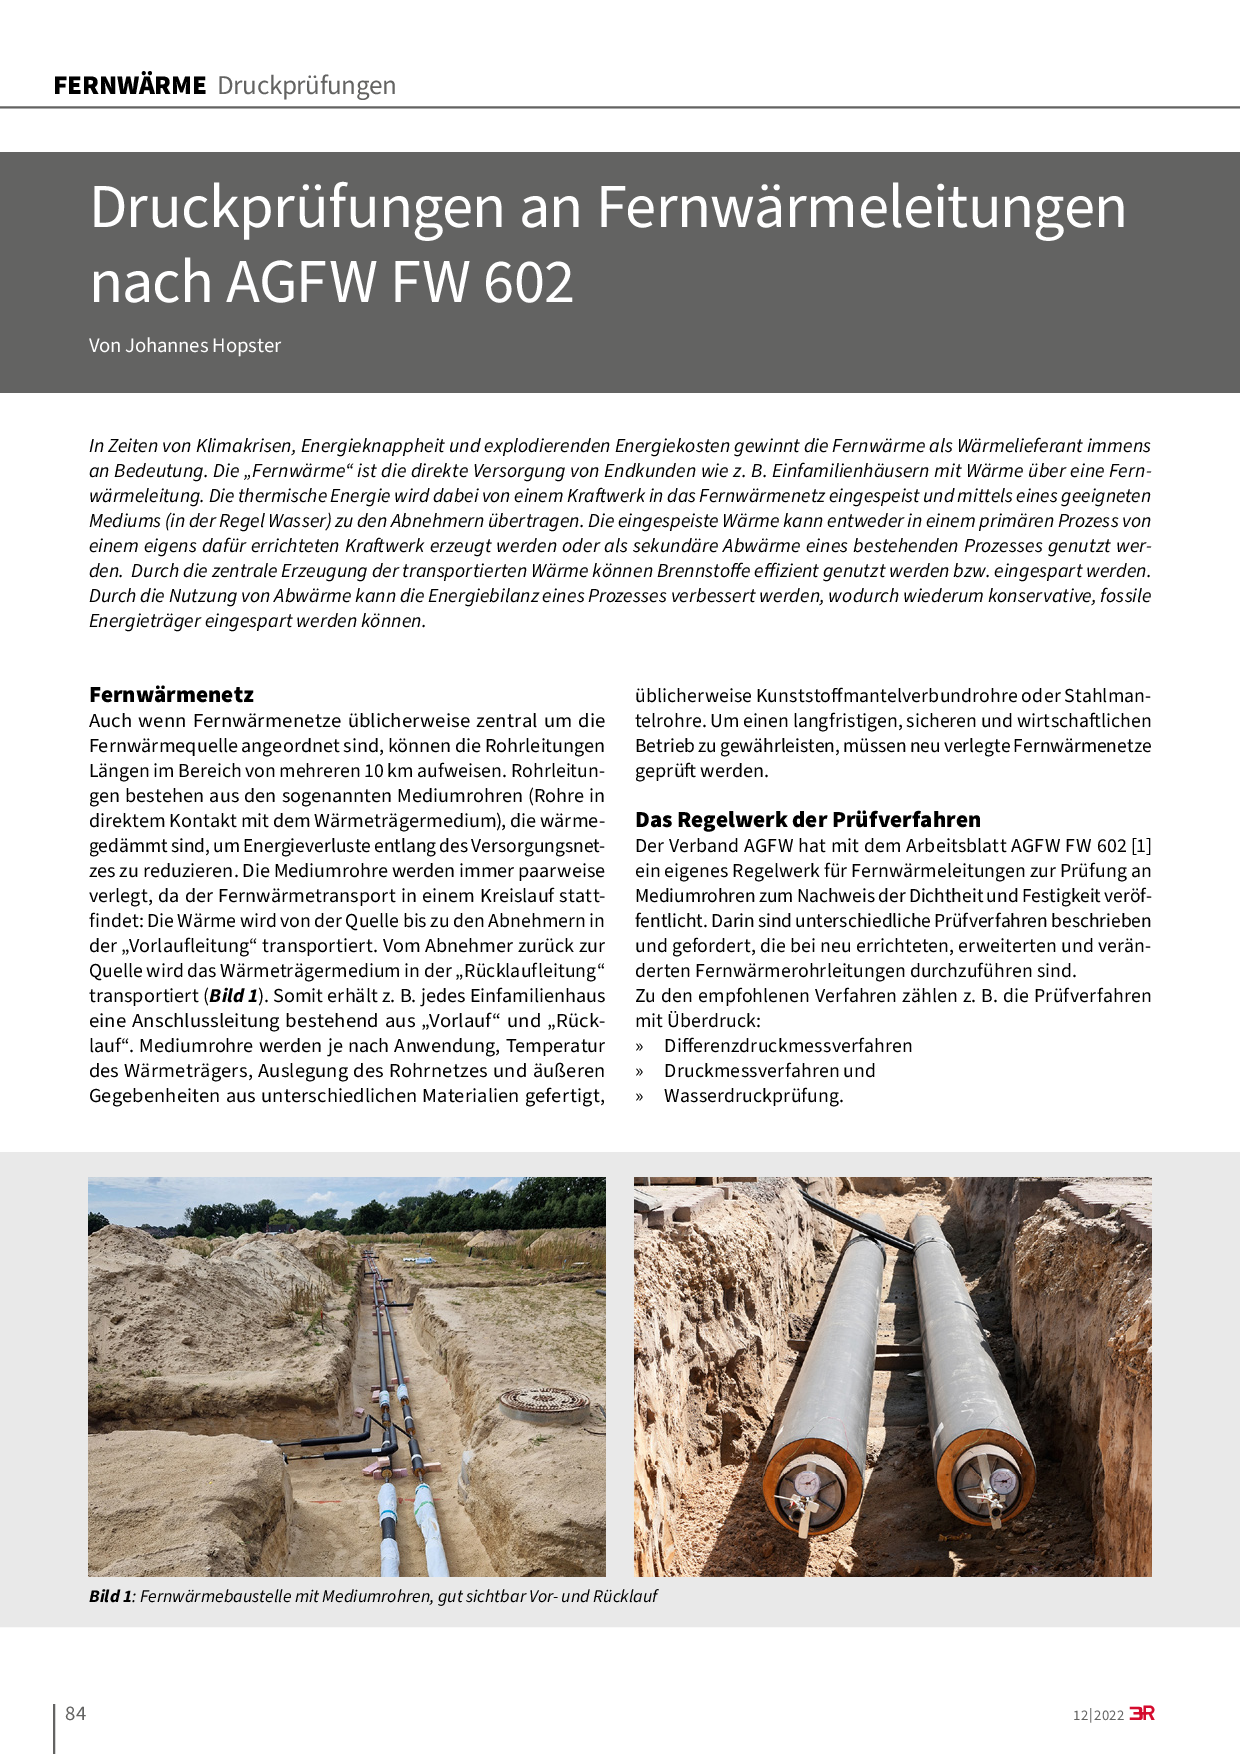 Druckprüfungen an Fernwärmeleitungen nach AGFW FW 602